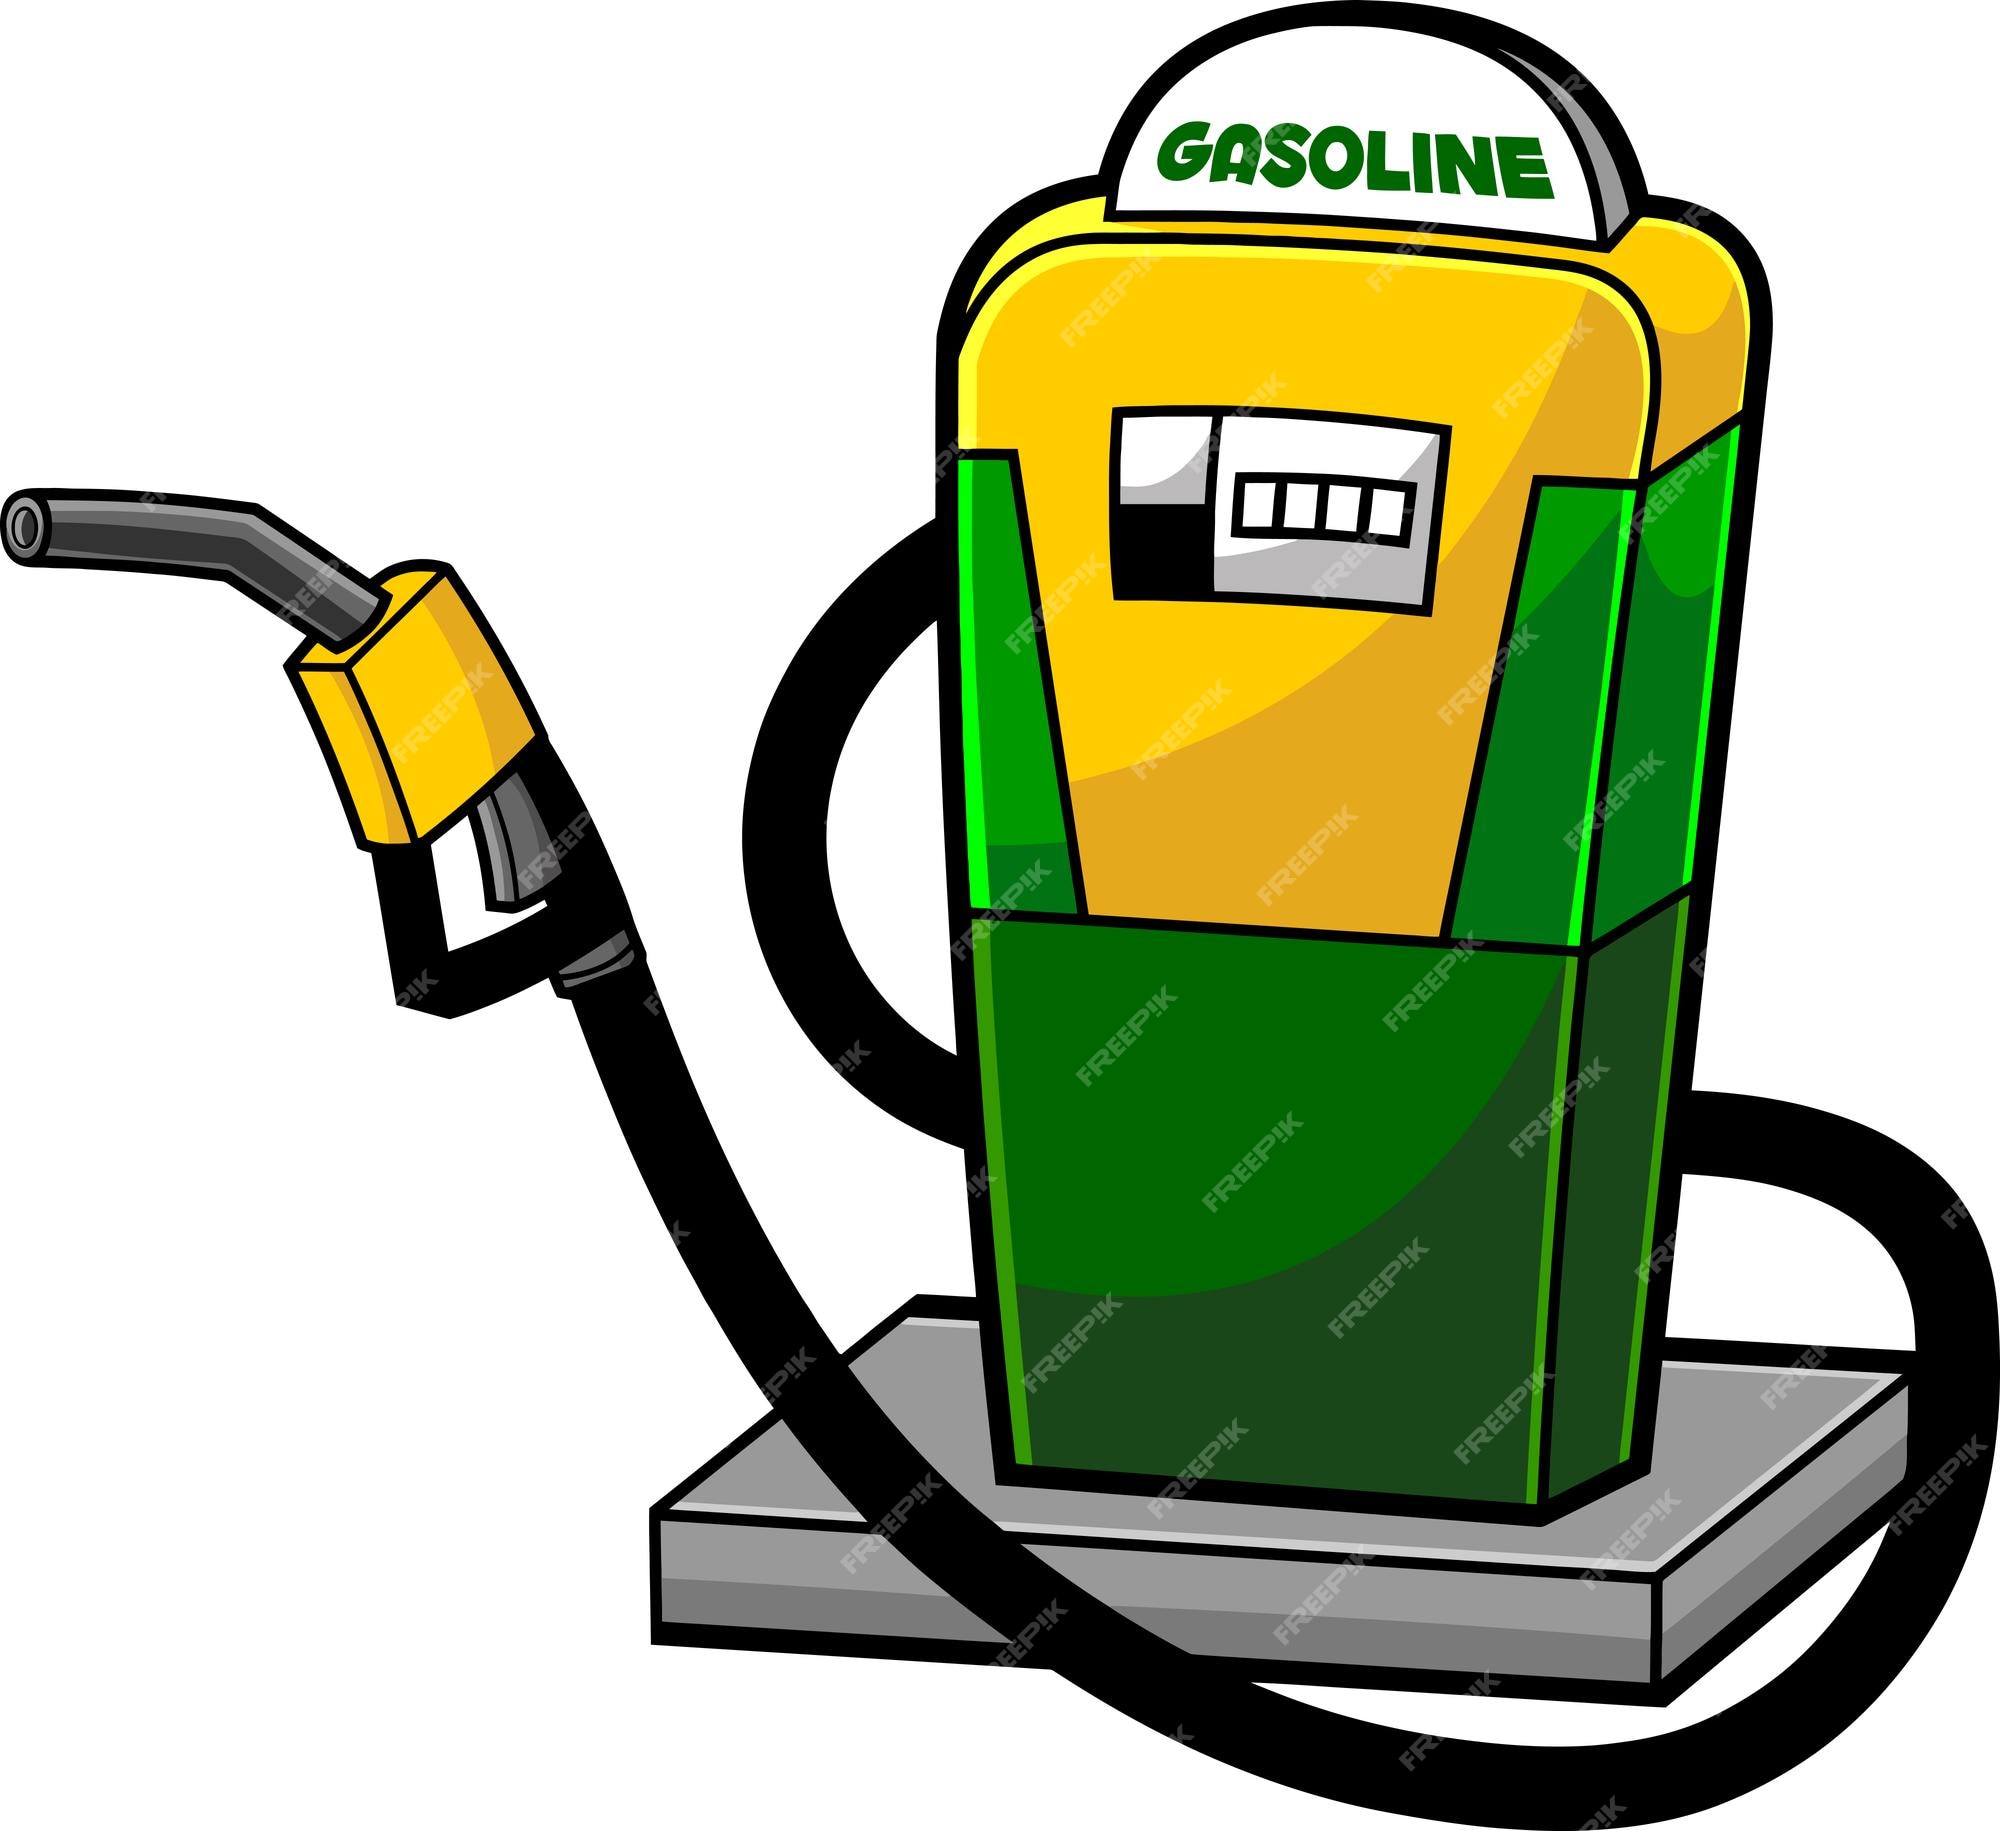 Página 34 | Vectores e ilustraciones de Combustible diesel para descargar  gratis | Freepik